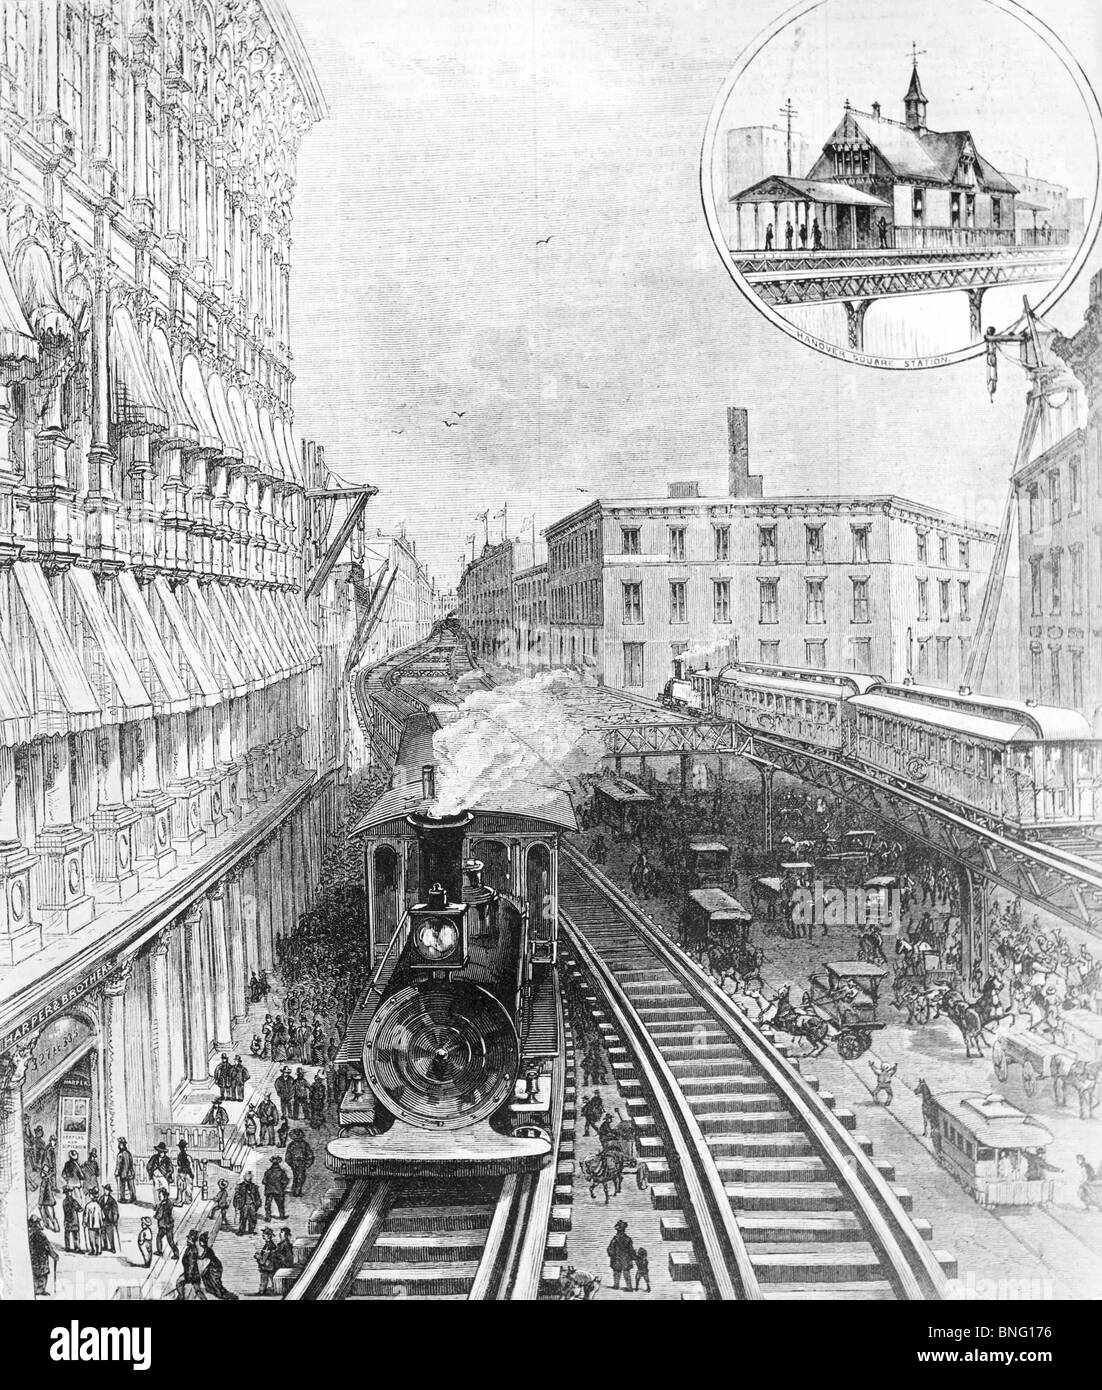 Les premiers trains L Steam-Driven passant sur Franklin Square par artiste inconnu, print, 1878 Banque D'Images